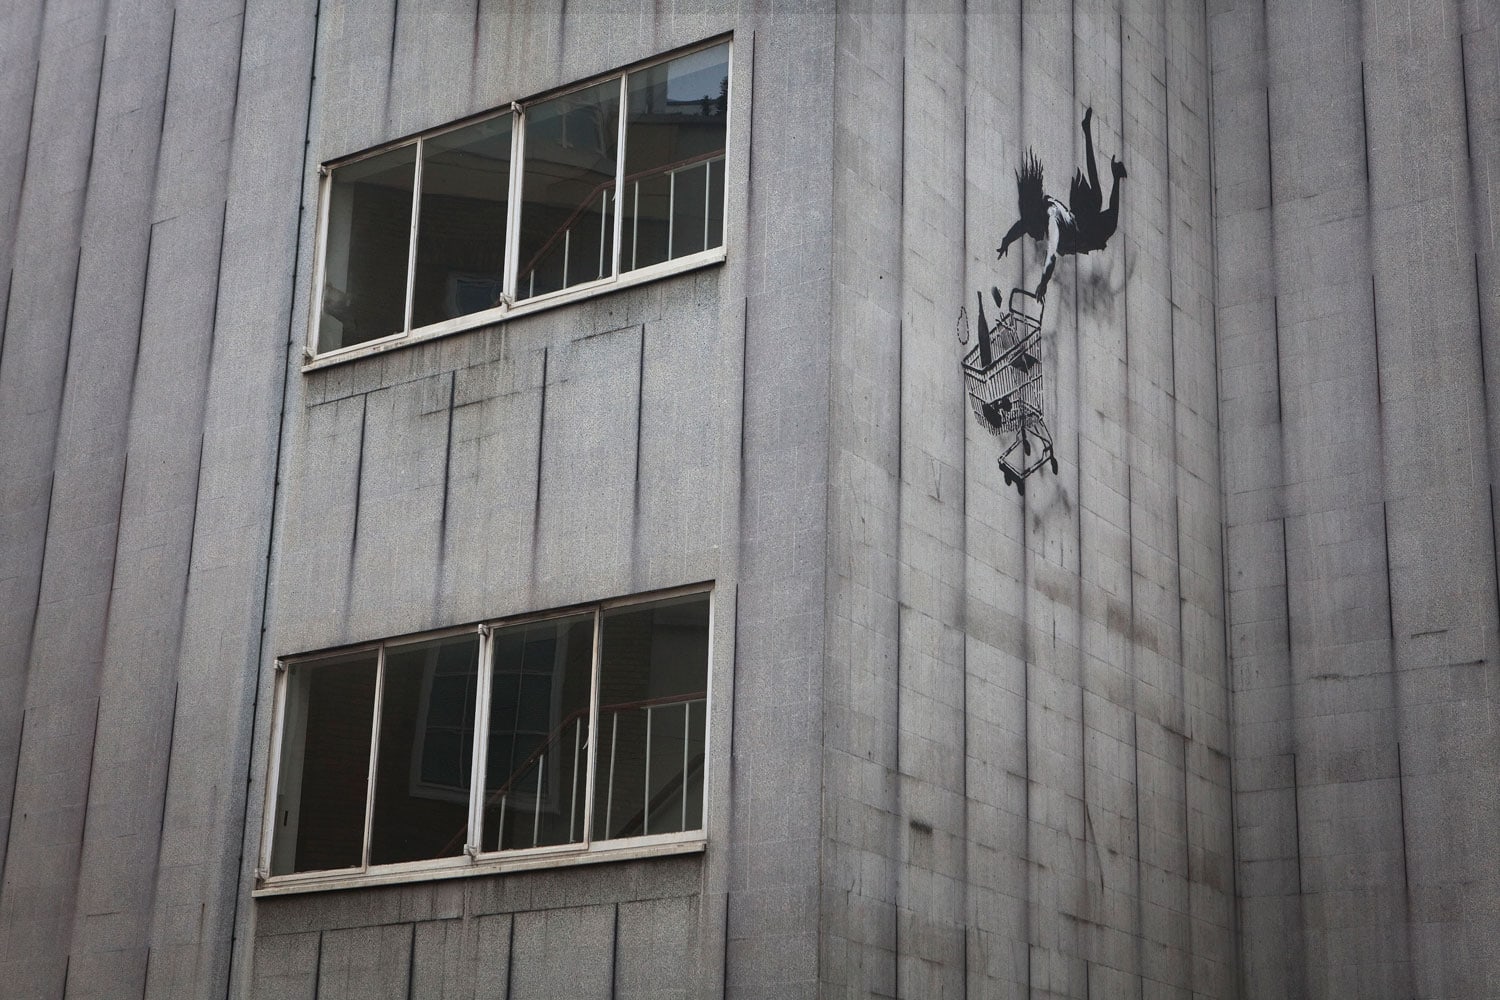 Londres es uno de los escenarios preferidos de Banksy